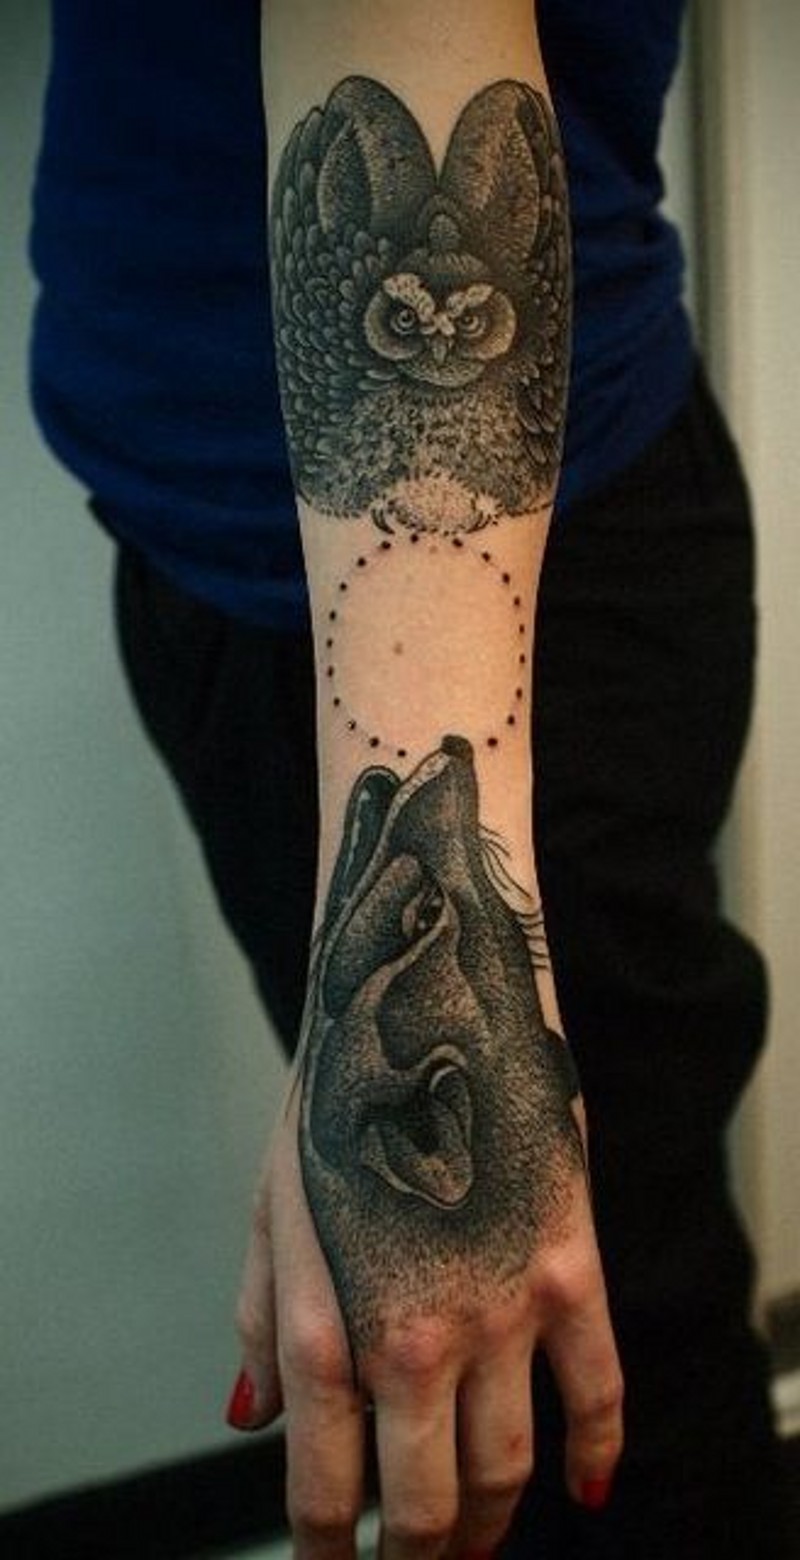 Tatuaje en el antebrazo, lechuza en vuelo y zorro cazador